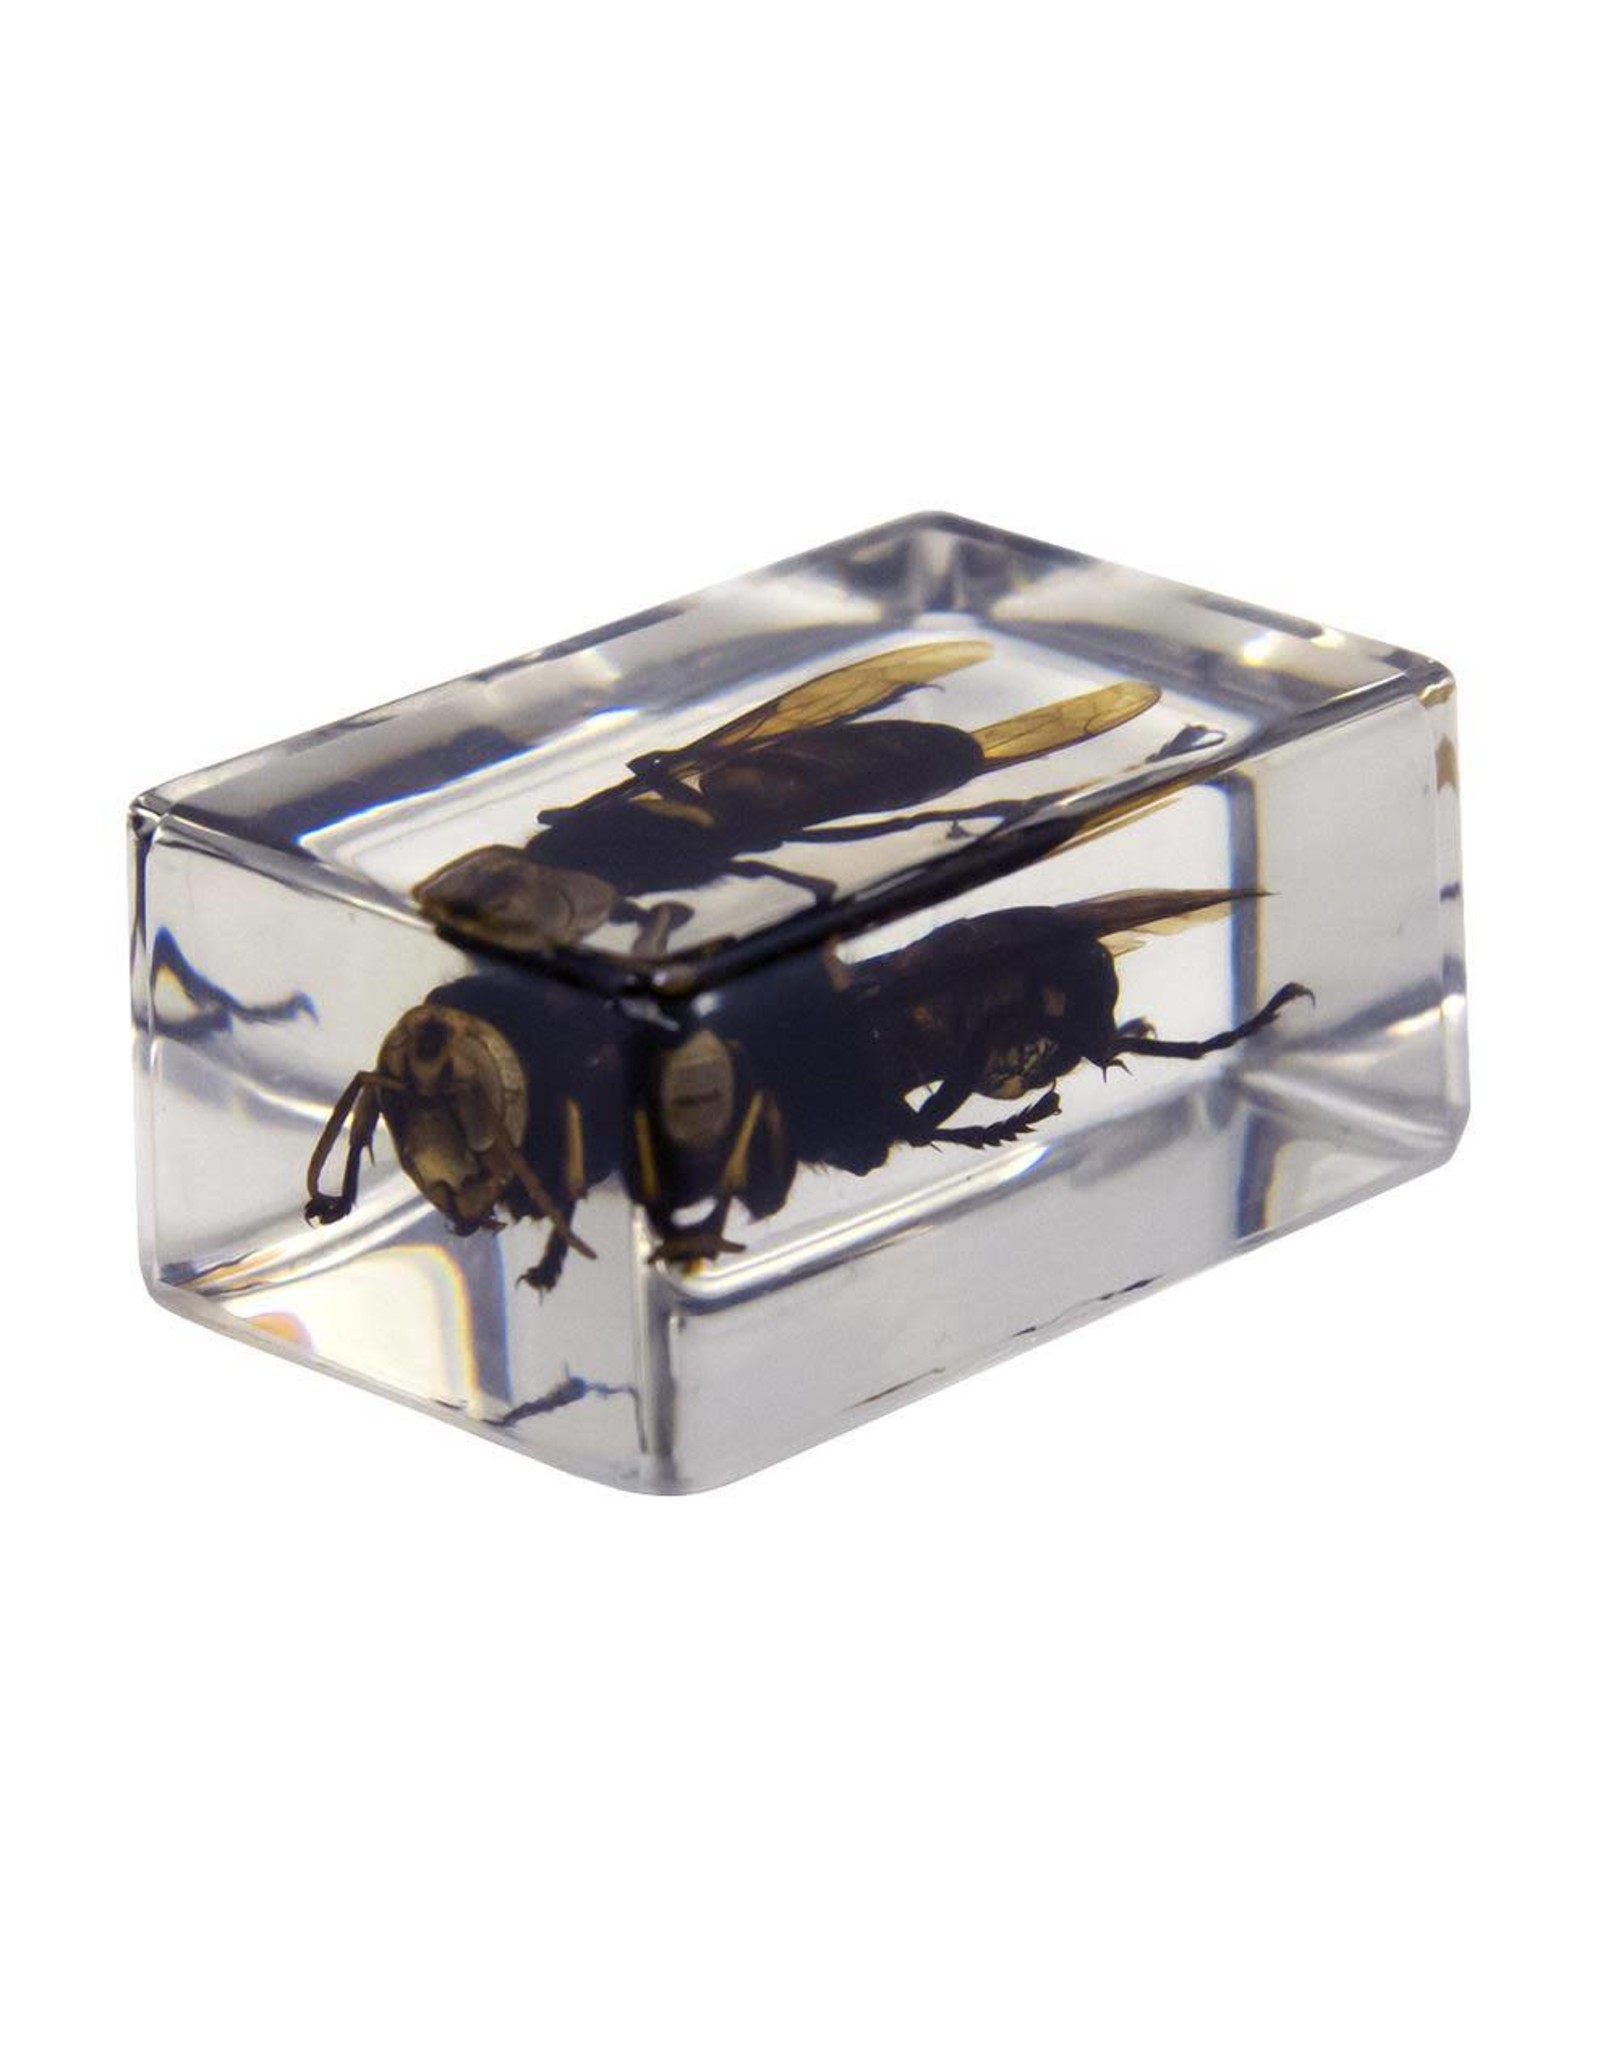 Celestron Celestron 3D Bug Specimen Kit #2 (Limited Quantities)